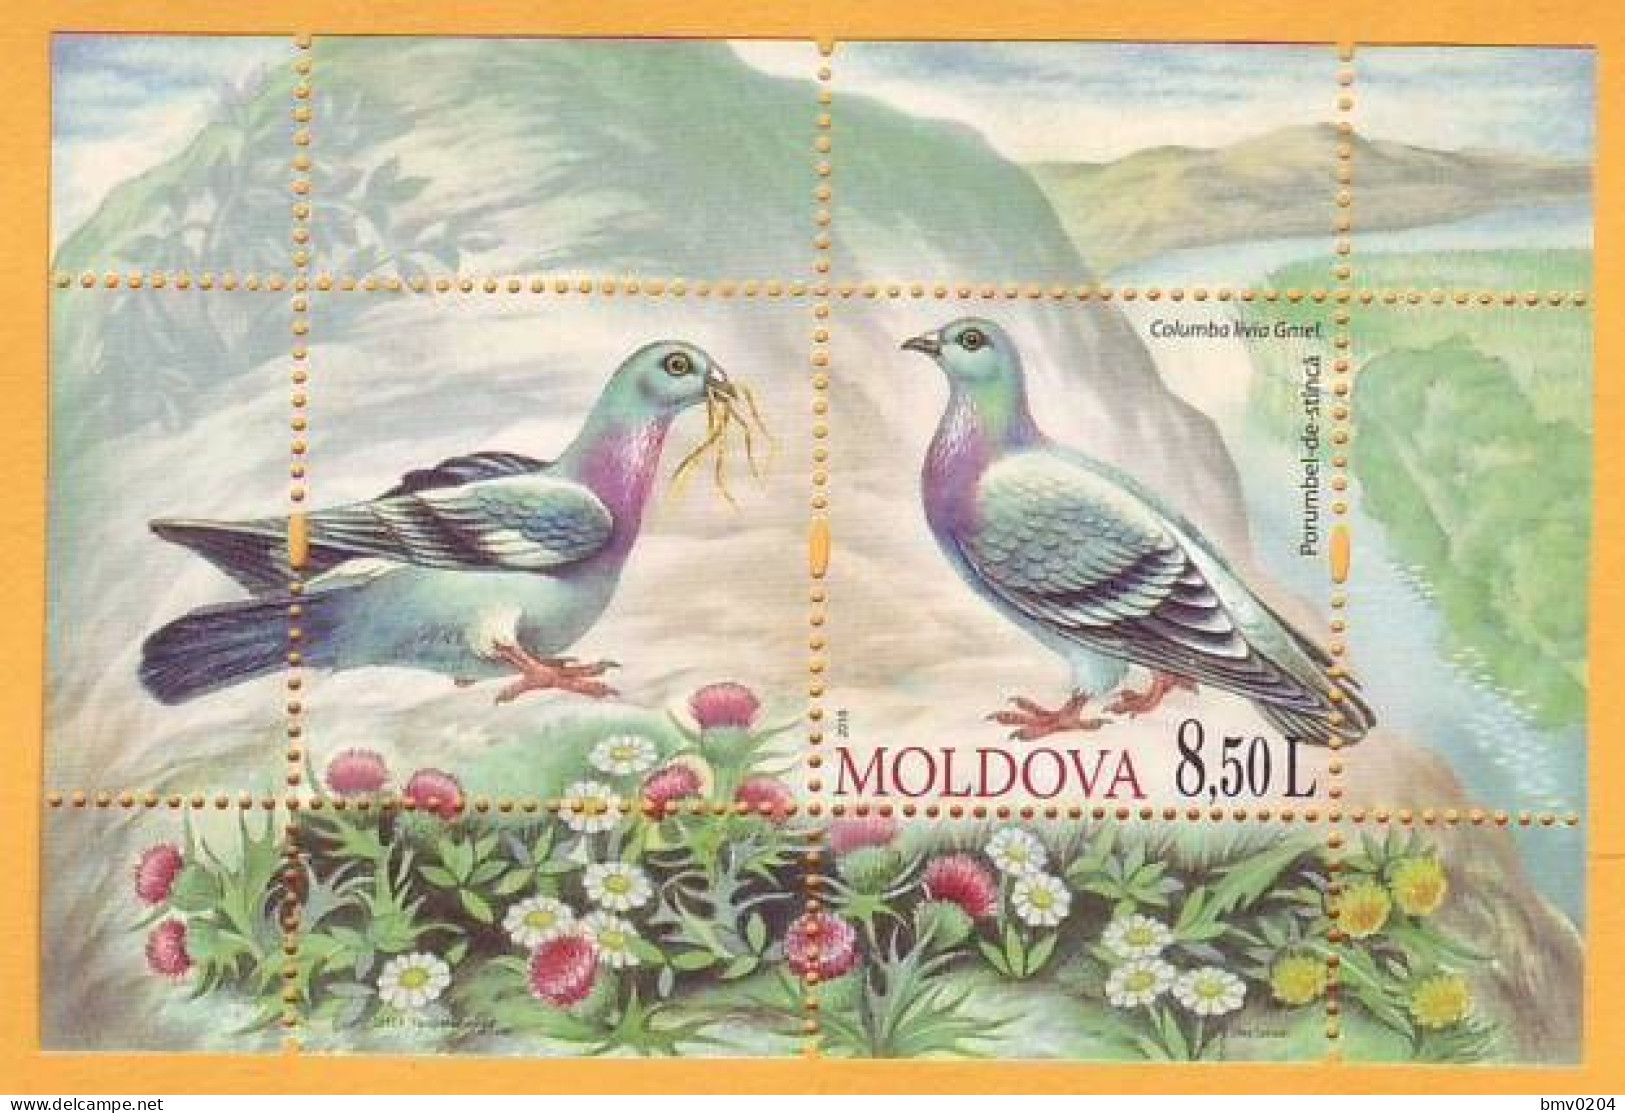 2010  Moldova Moldavie Moldau Fauna Birds  Block 50 Mi  Pigeons Mint - Columbiformes